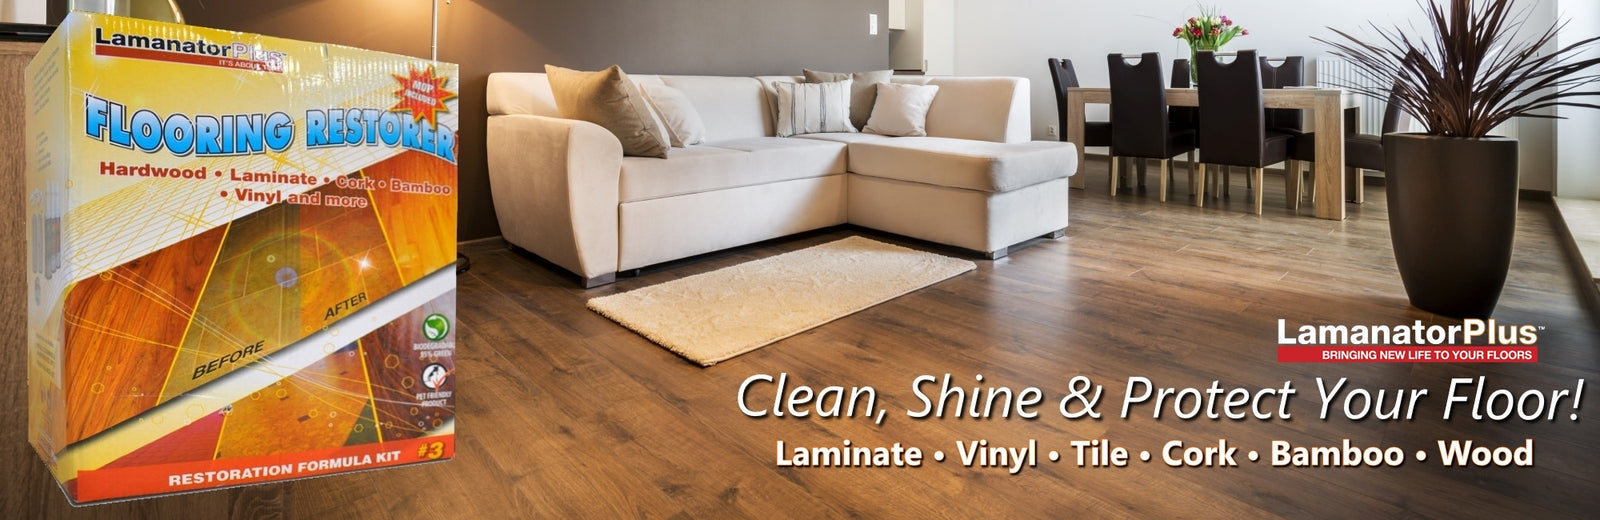 Laminate Floor Cleaning Solutions Lamanator Plus